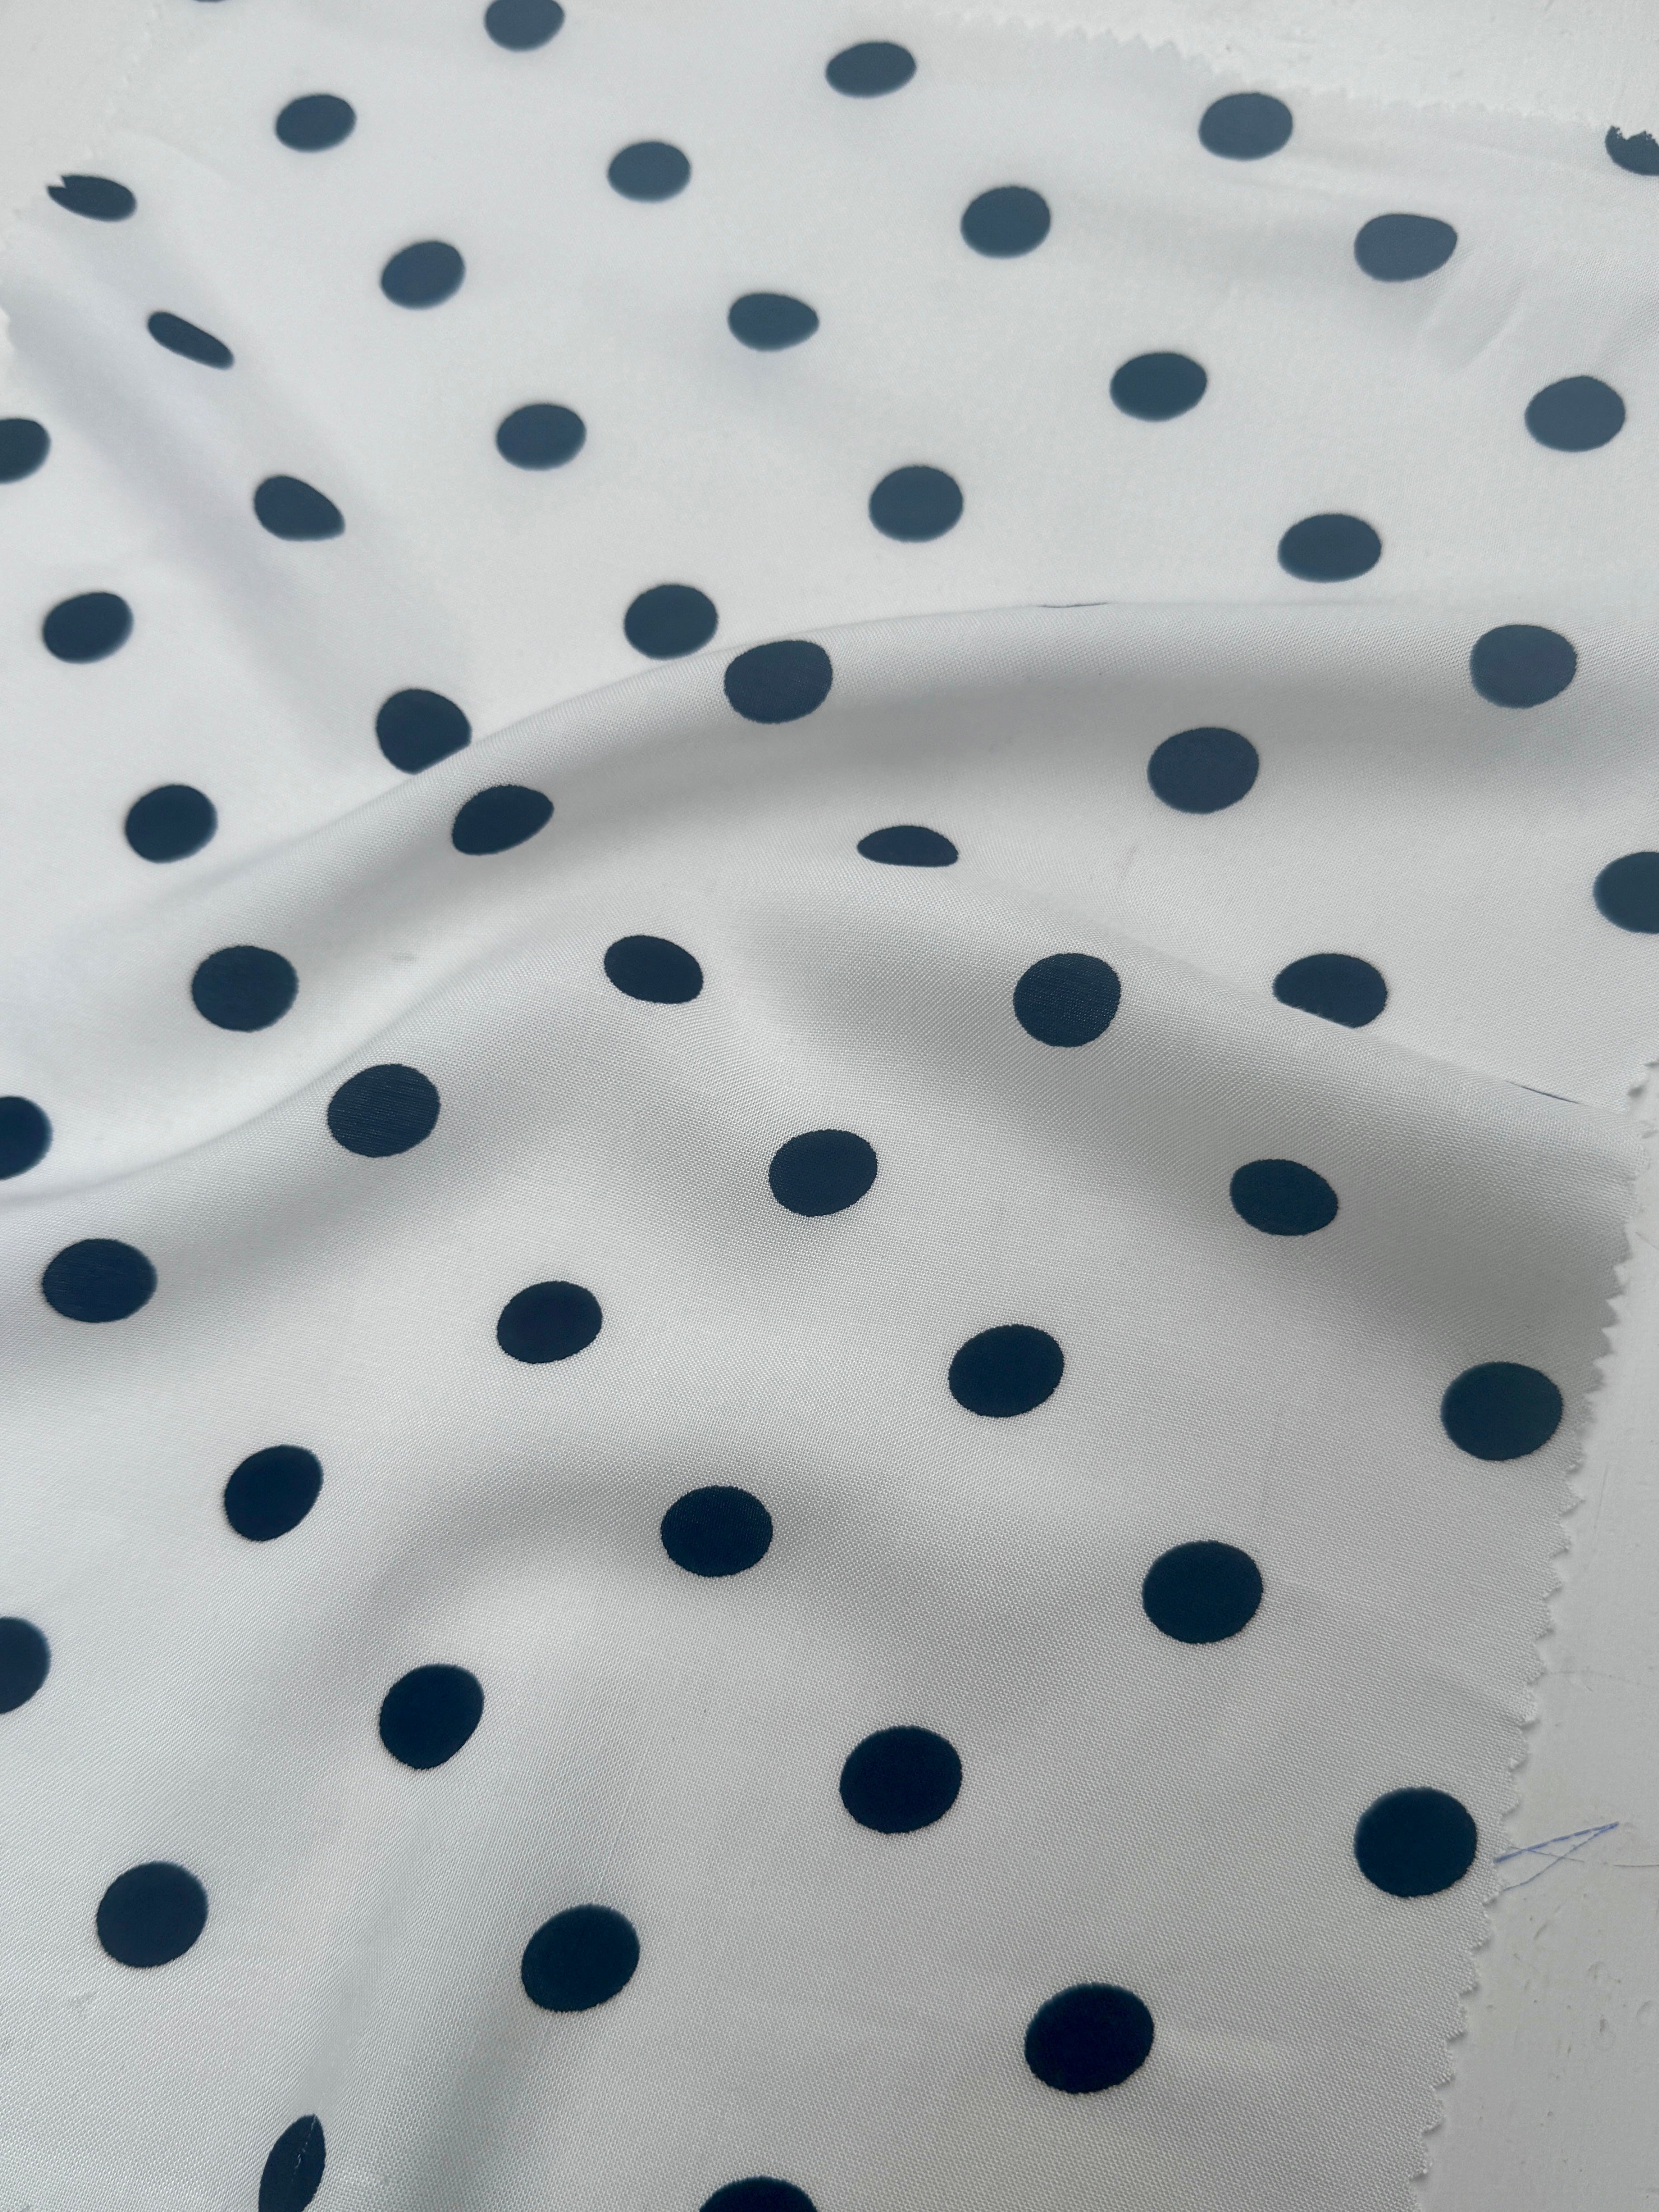 Black Polka dots on White Rayon Challis, Black Rayon Challis, Black and white Rayon Challis, eco-friendly fabric, pure Rayon Challis fabric, Rayon Challis, Rayon Challis fabric, kiki textiles, sewing